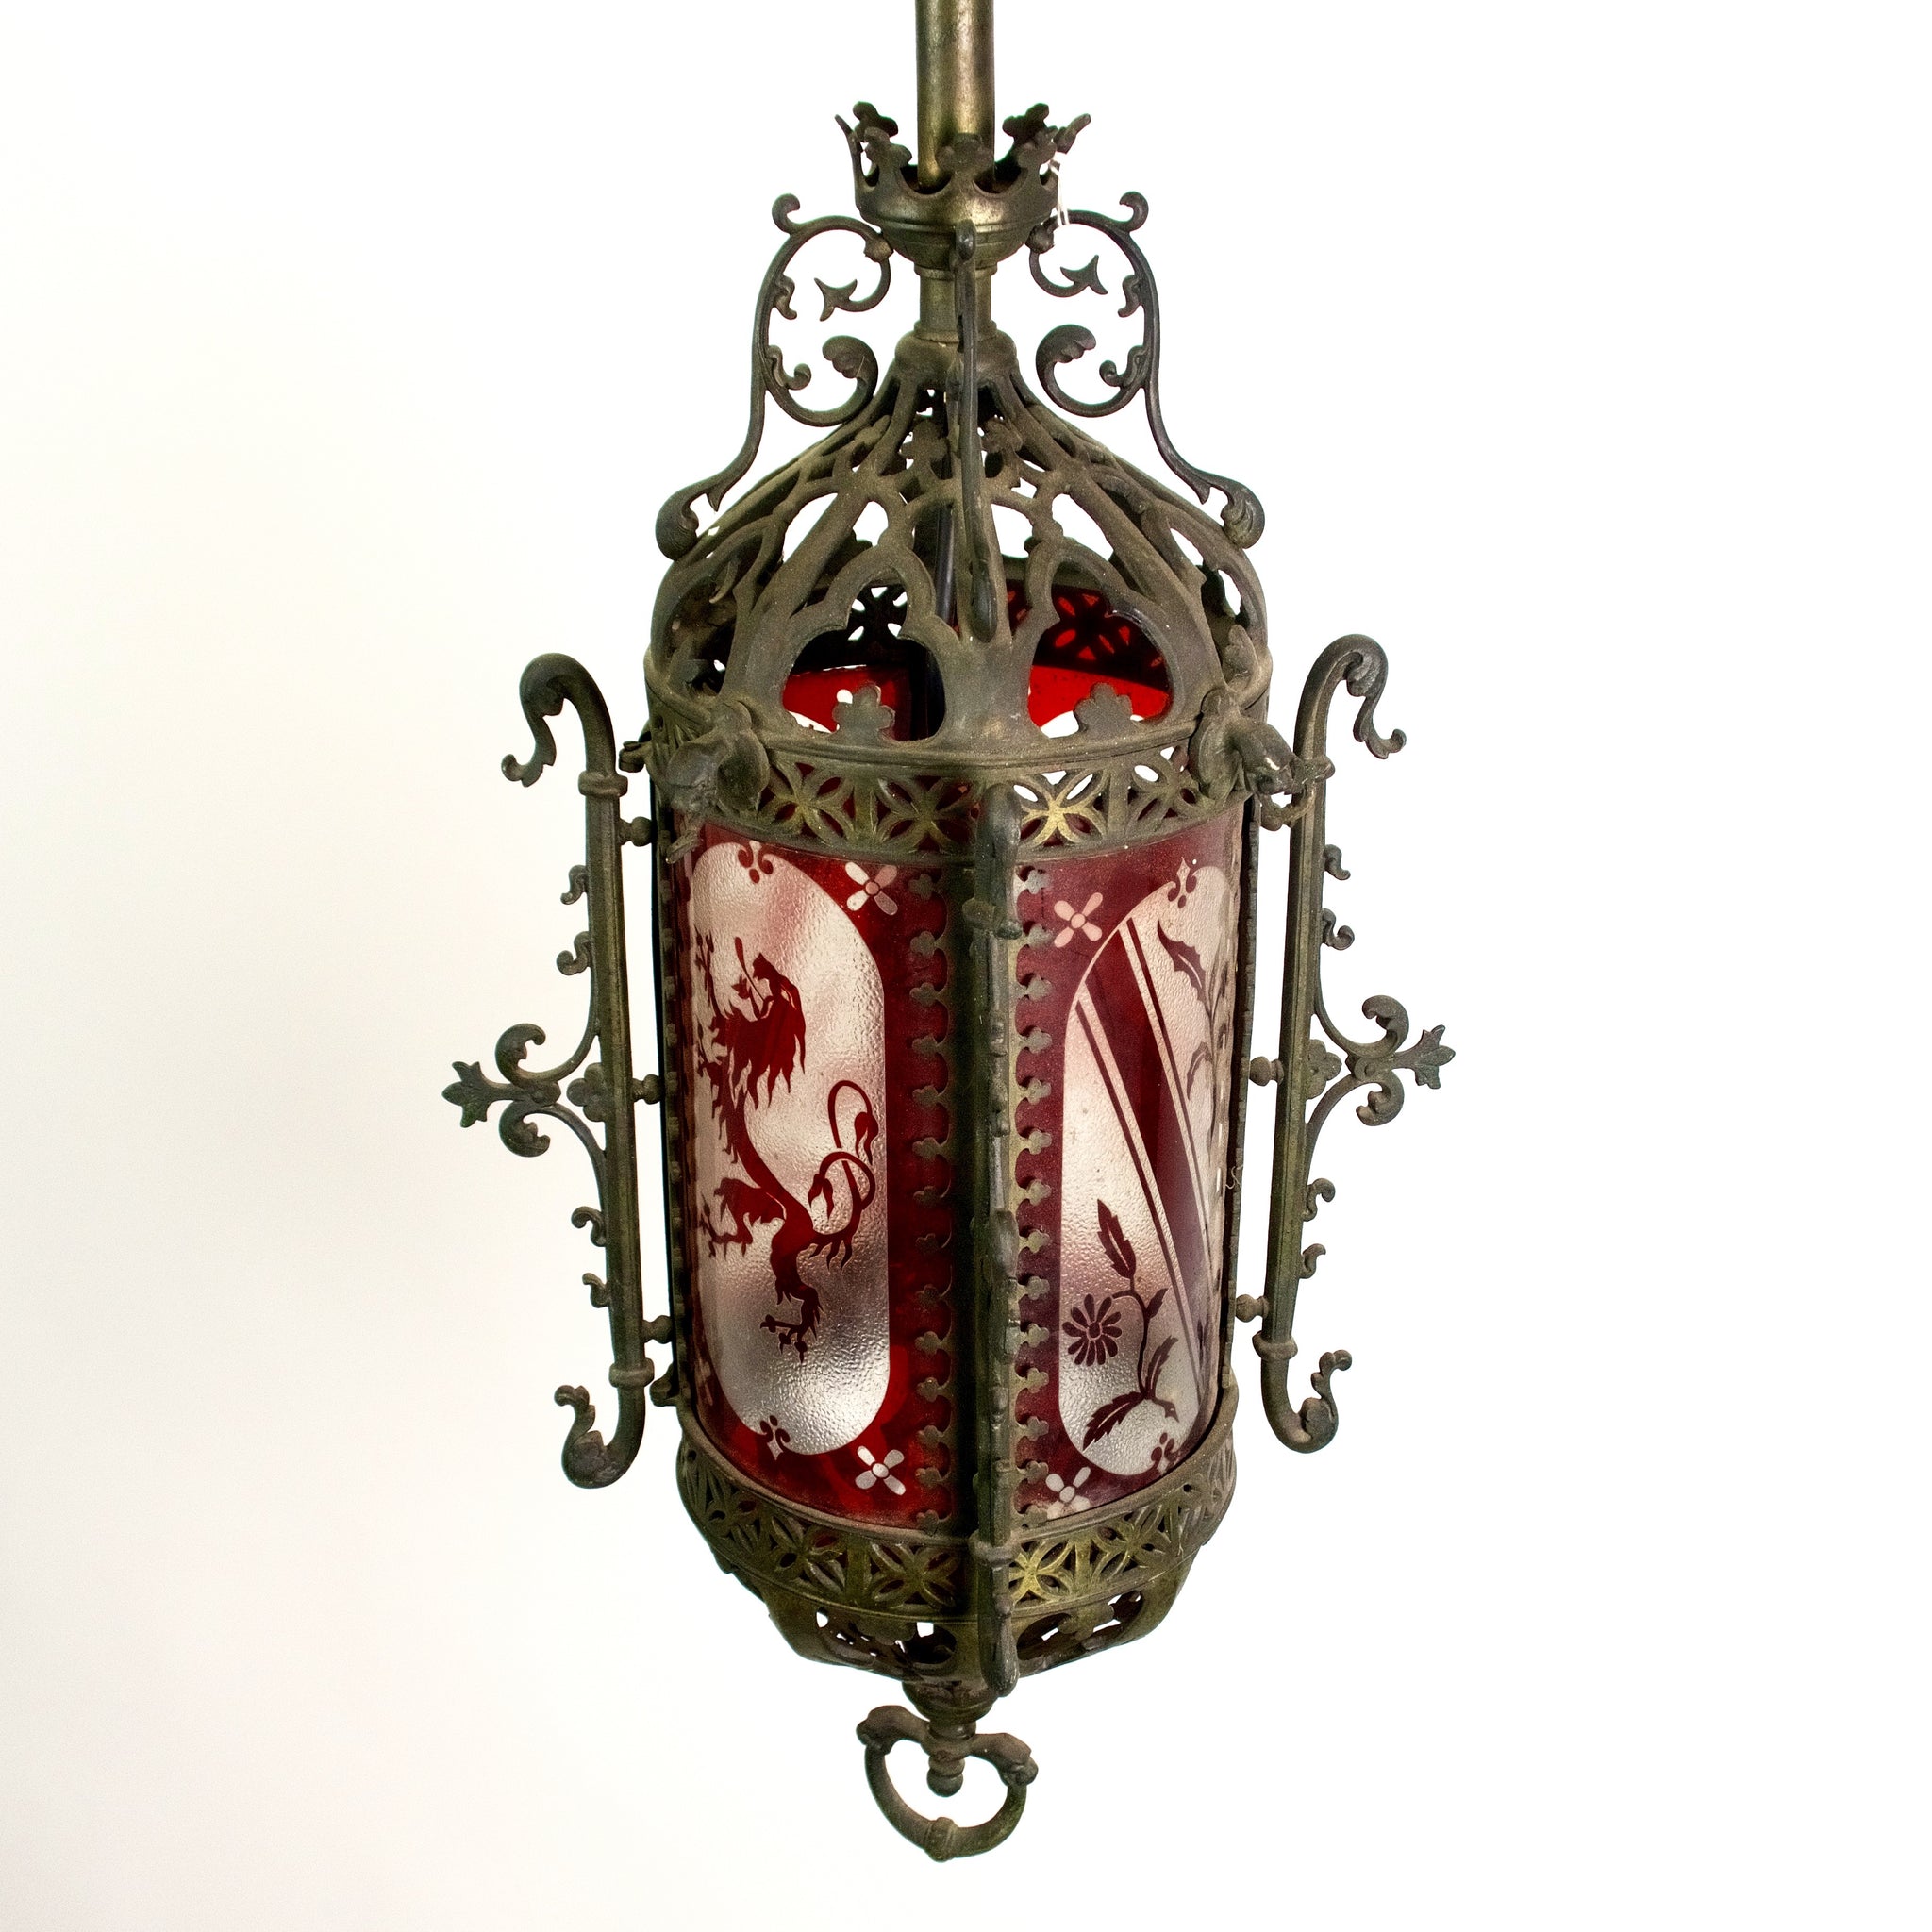 Stunning English Gothic hall lantern circa 1880.